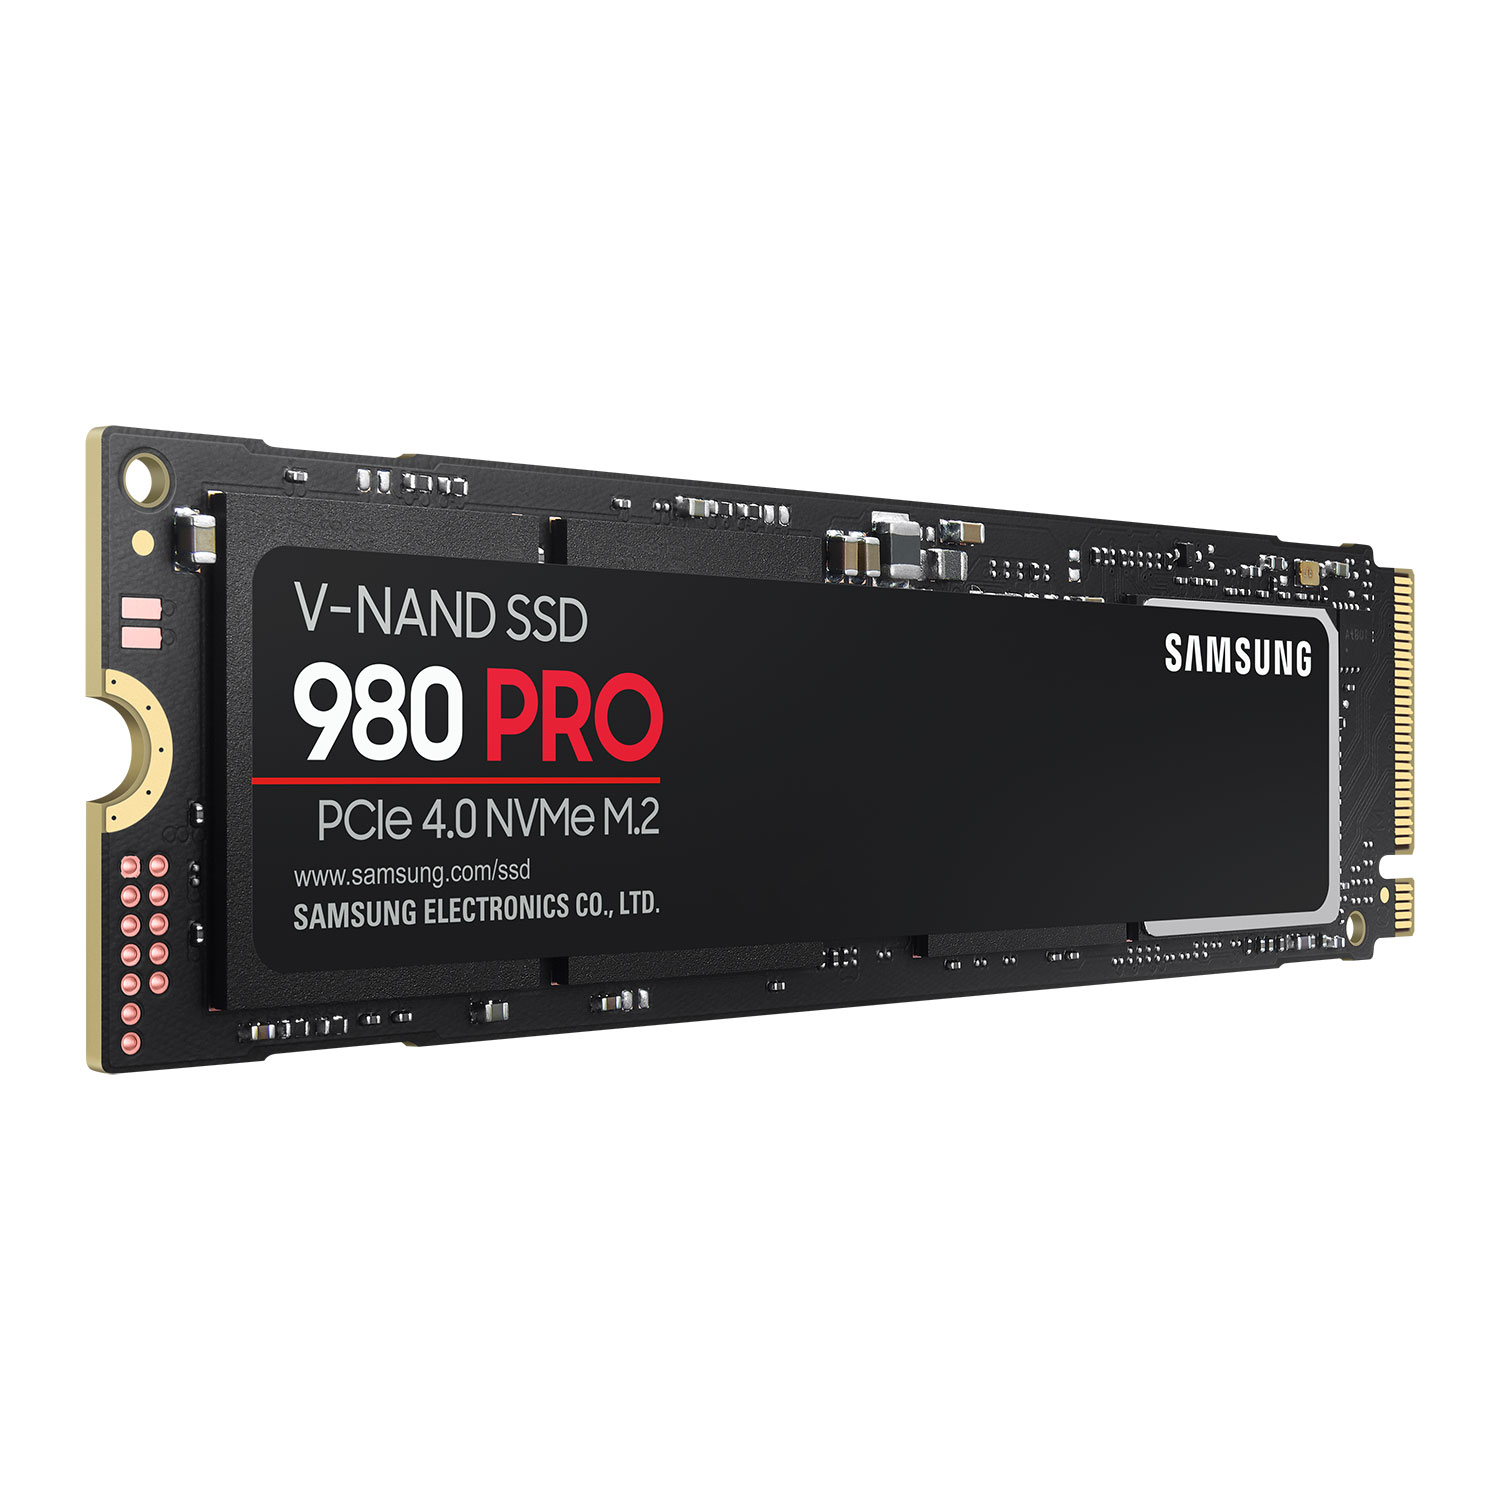 Immagine pubblicata in relazione al seguente contenuto: Il drive SSD monster Samsung 980 Pro M.2 PCIe Gen 4 2TB su uno store on line? | Nome immagine: news31409_Samsung-980-Pro-M.2-PCIe-Gen-4_1.jpg